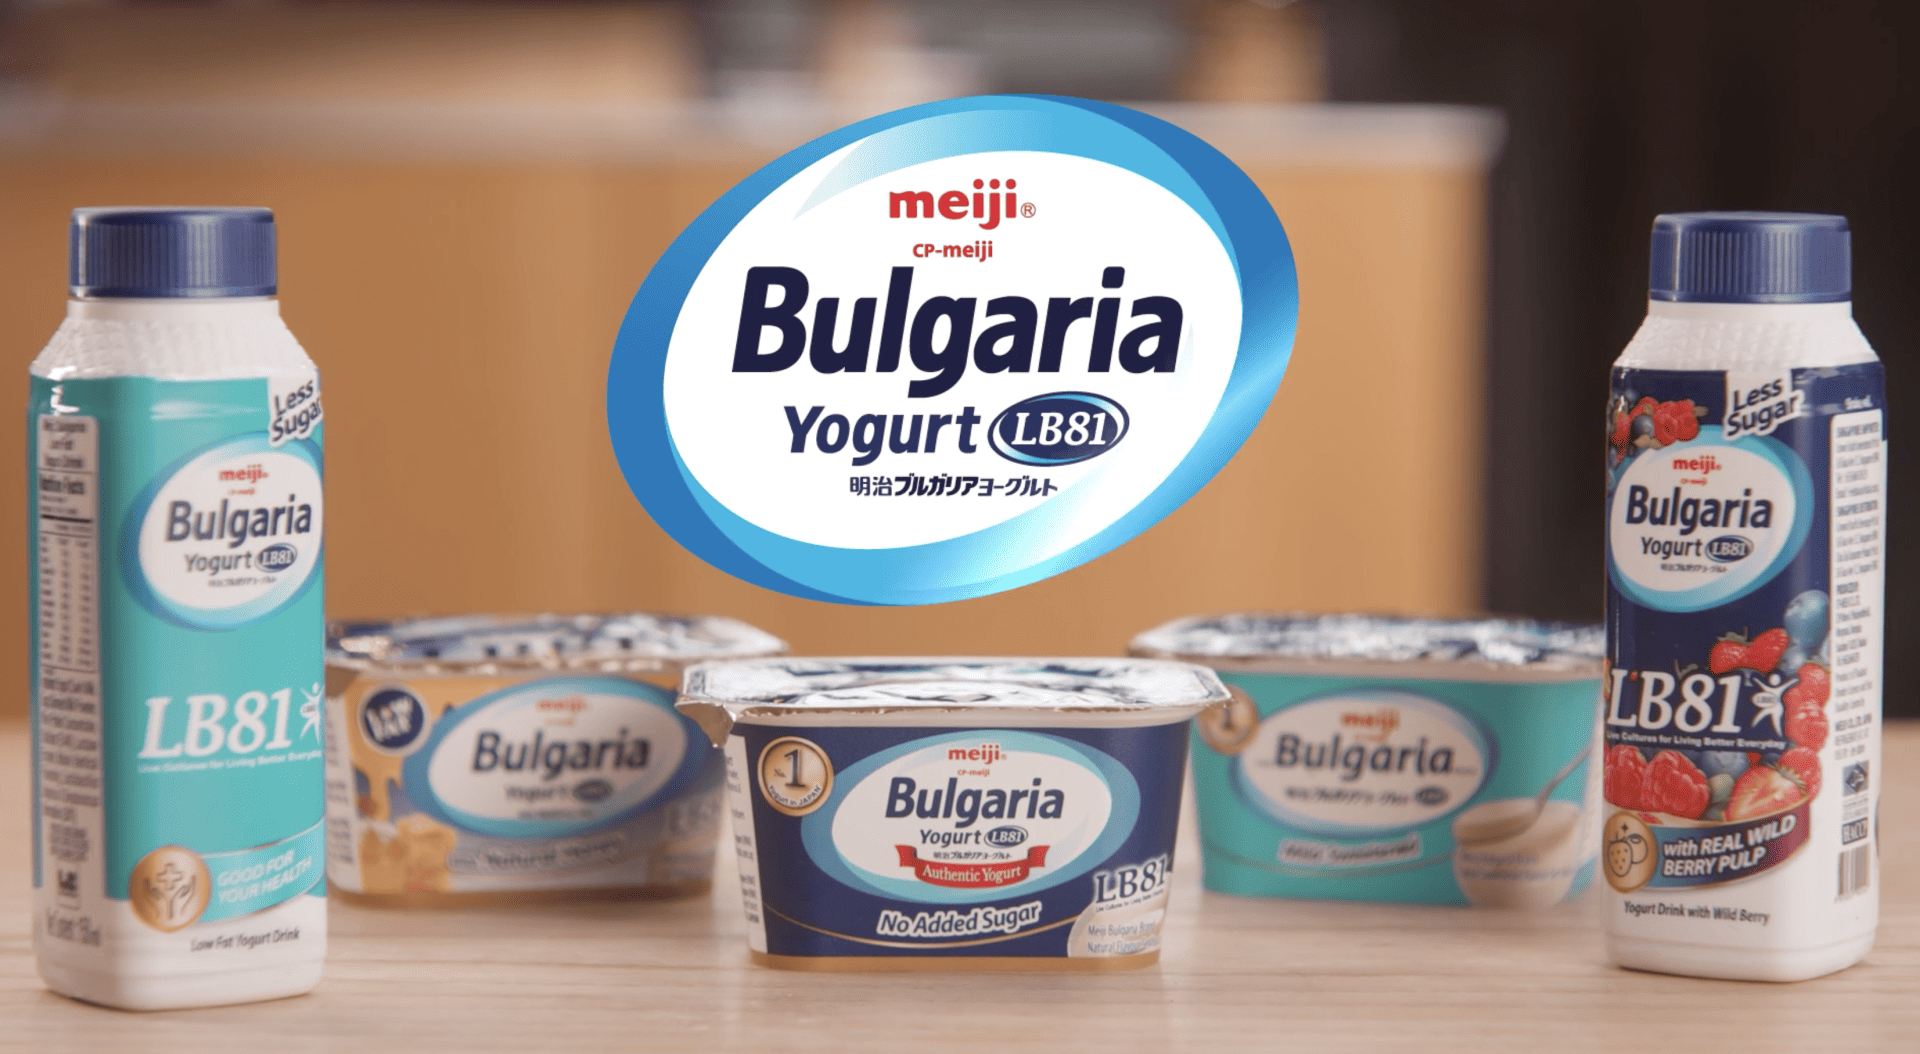 Meiji – Bulgaria Yogurt